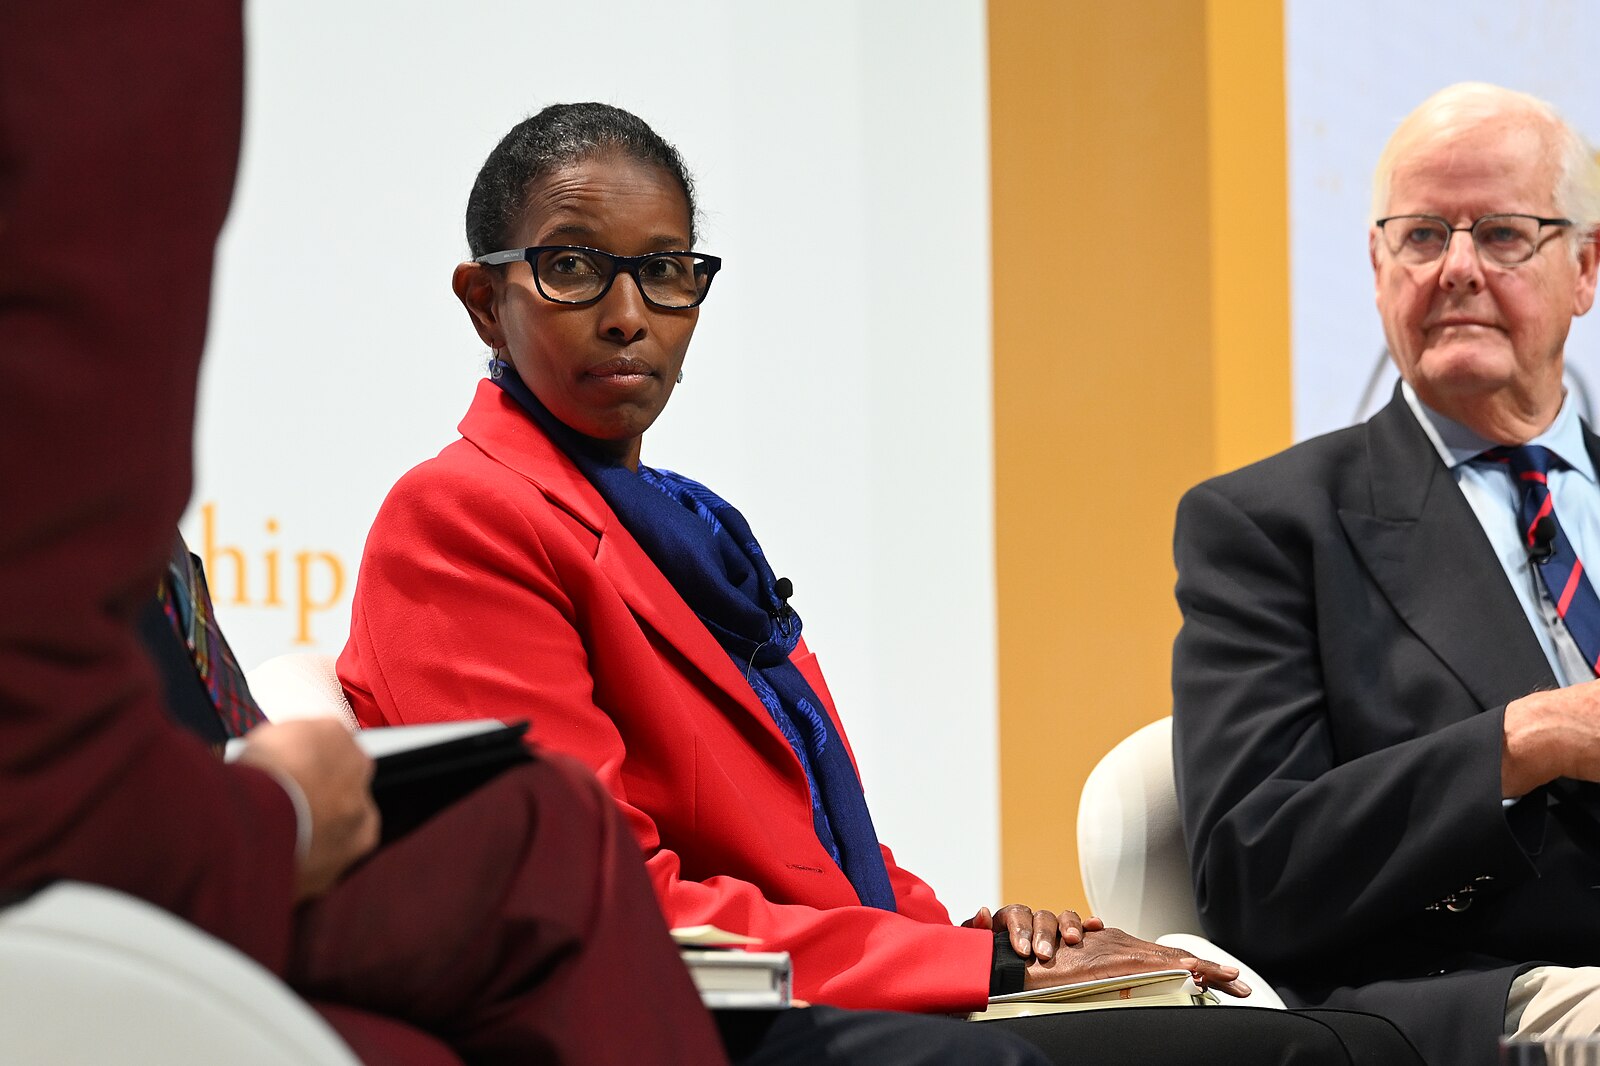 Miért lett Ayaan Hirsi Ali keresztény?